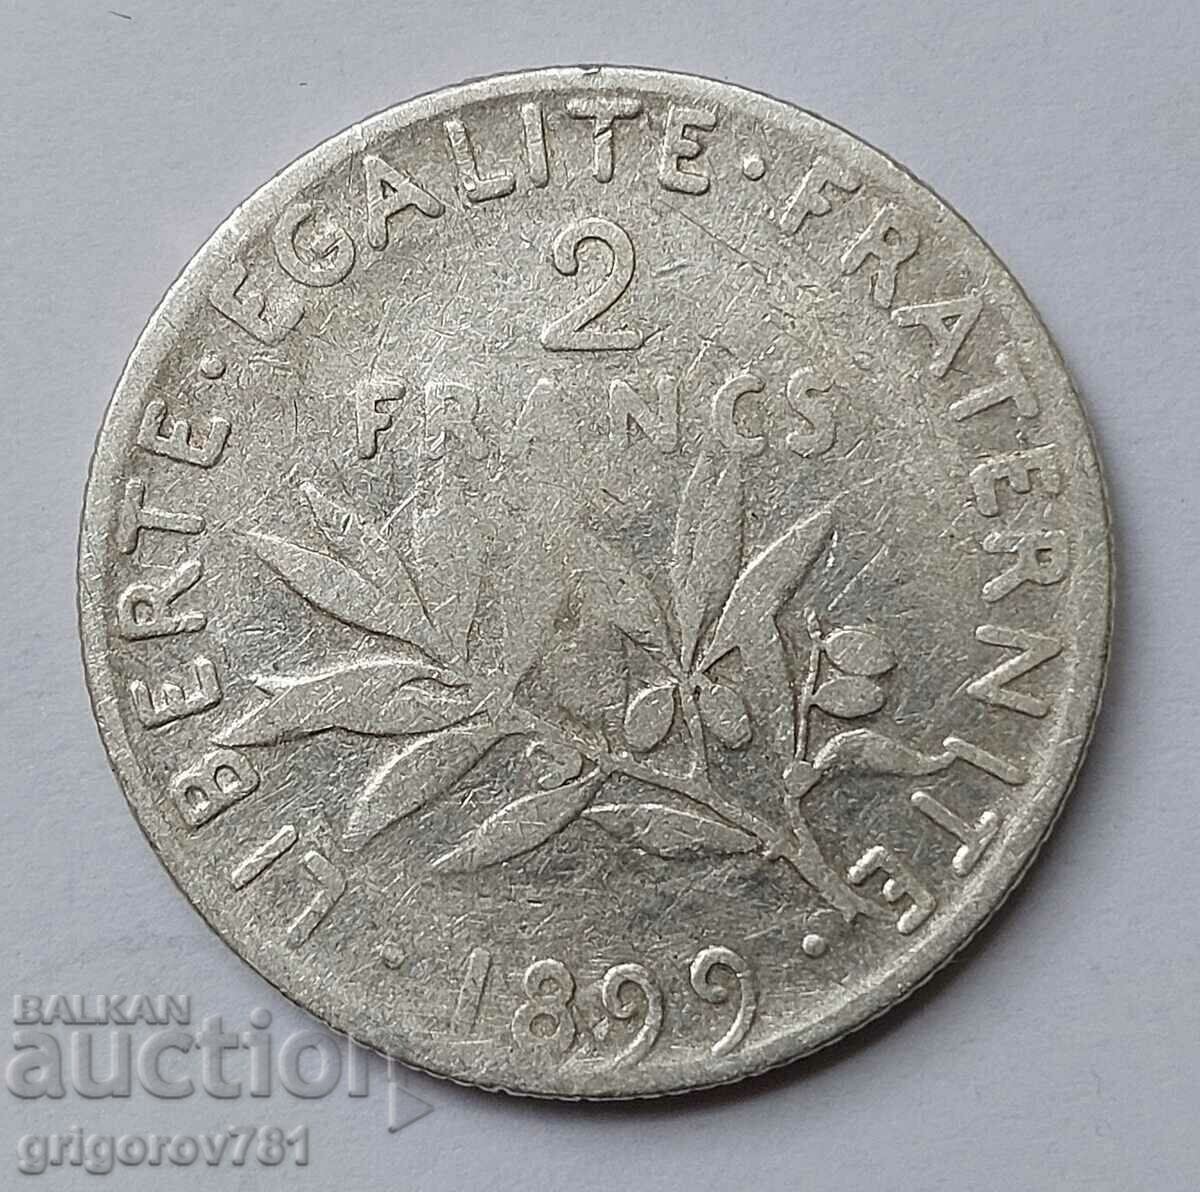 2 Franci Argint Franta 1899 - Moneda de argint #41